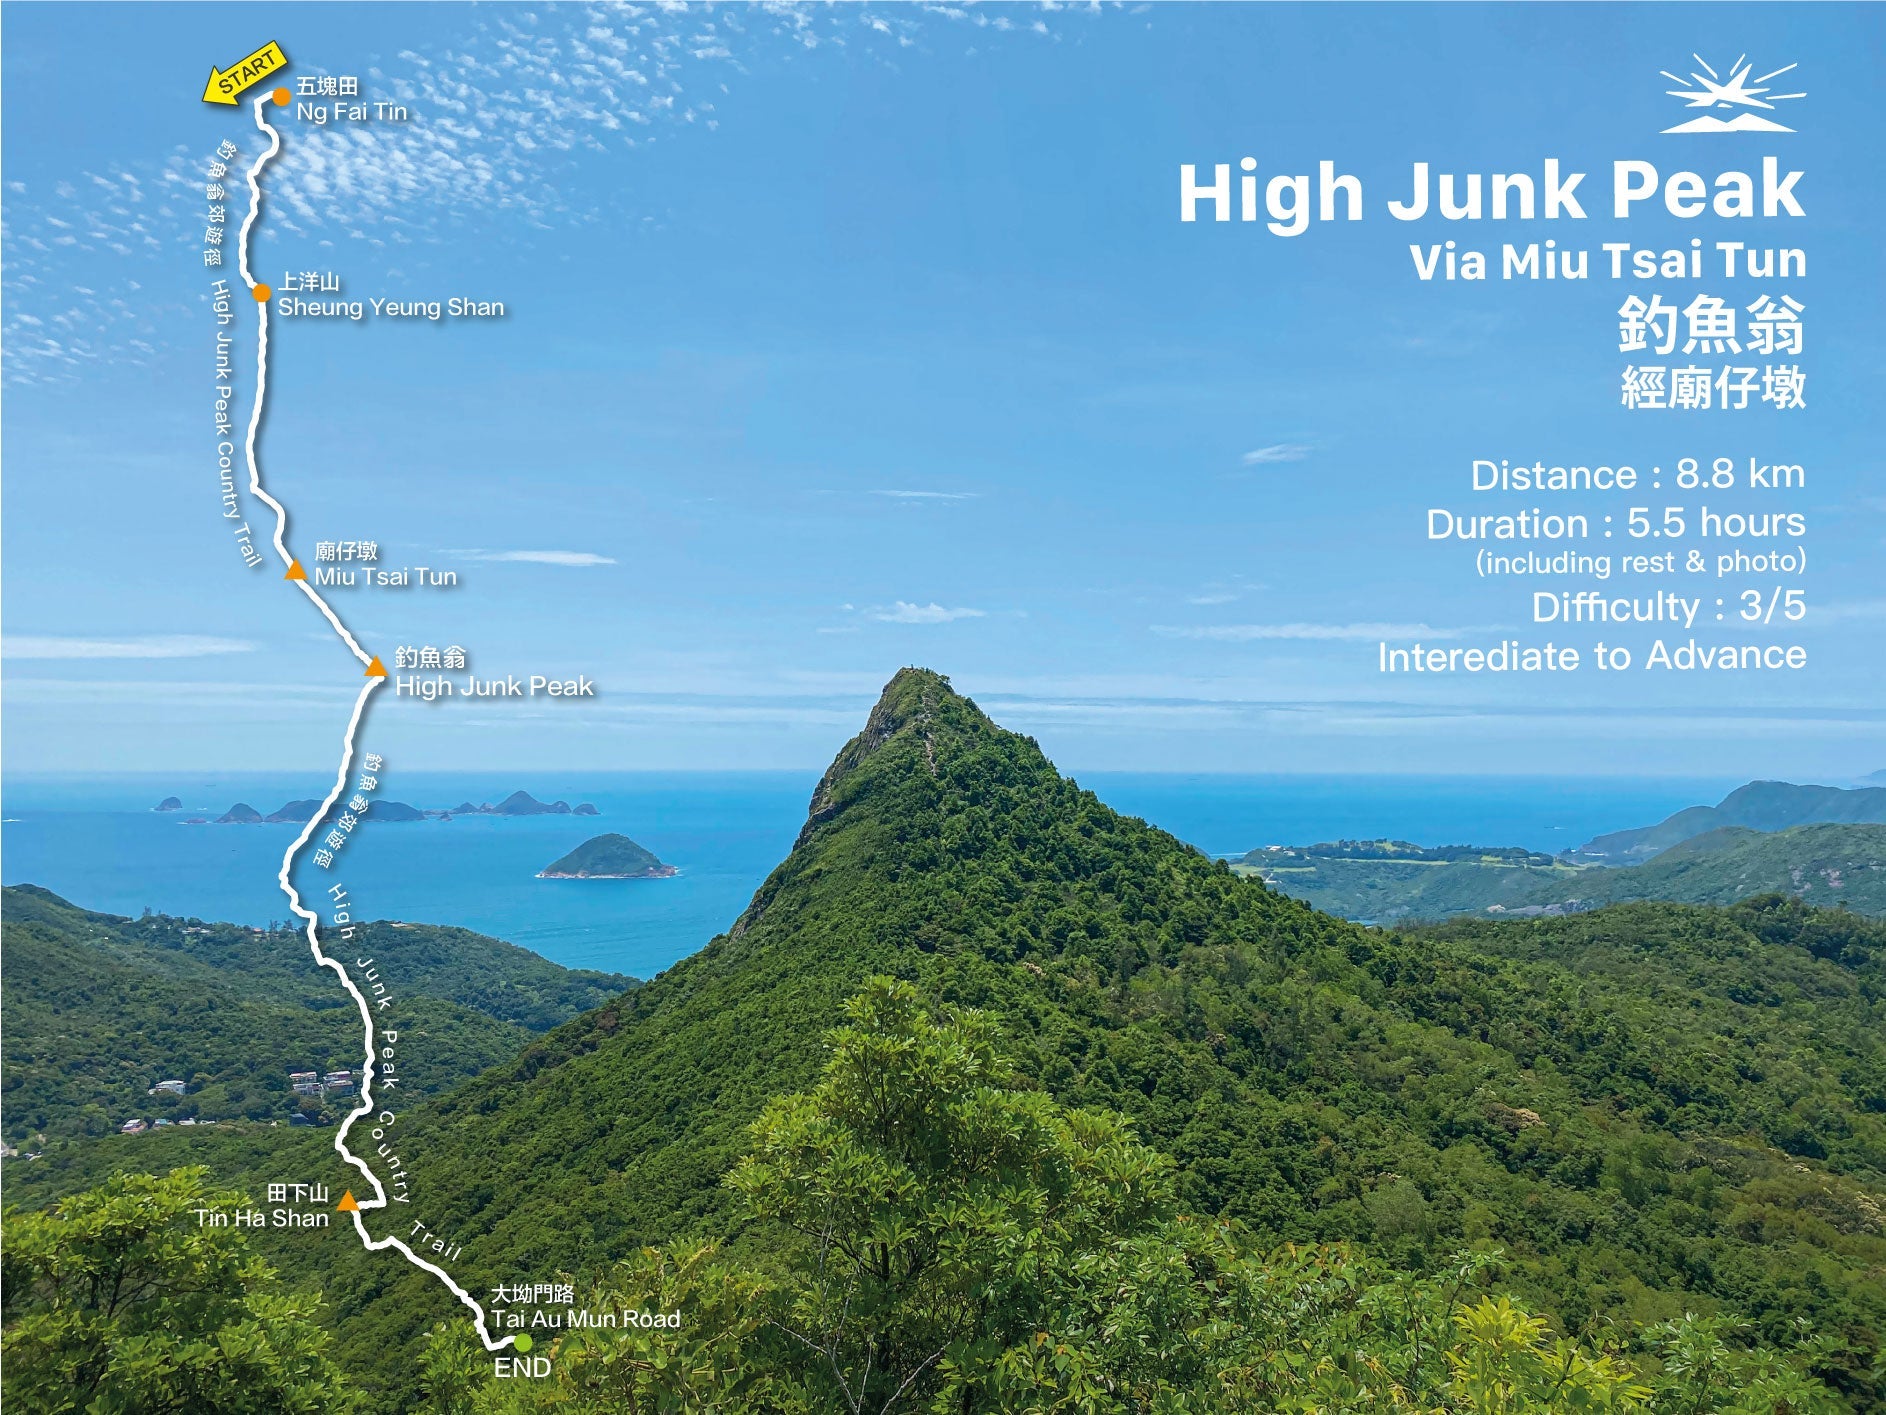 High Junk Peak via Miu Tsai Tun